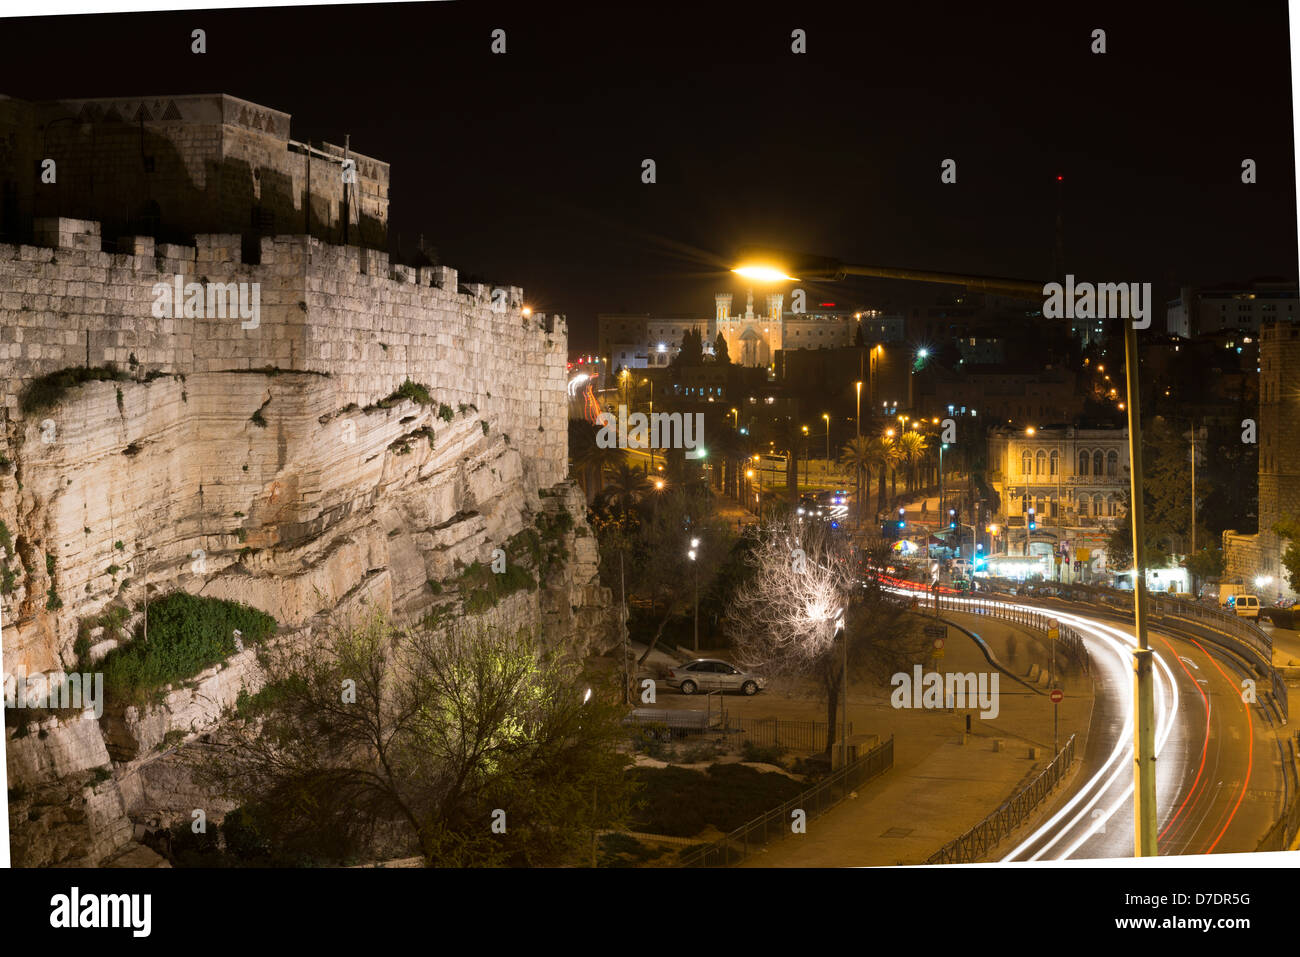 Location de light trails en dehors de l'enceinte de la vieille ville de Jérusalem qui est illuminée la nuit, près de la Porte de Damas Banque D'Images